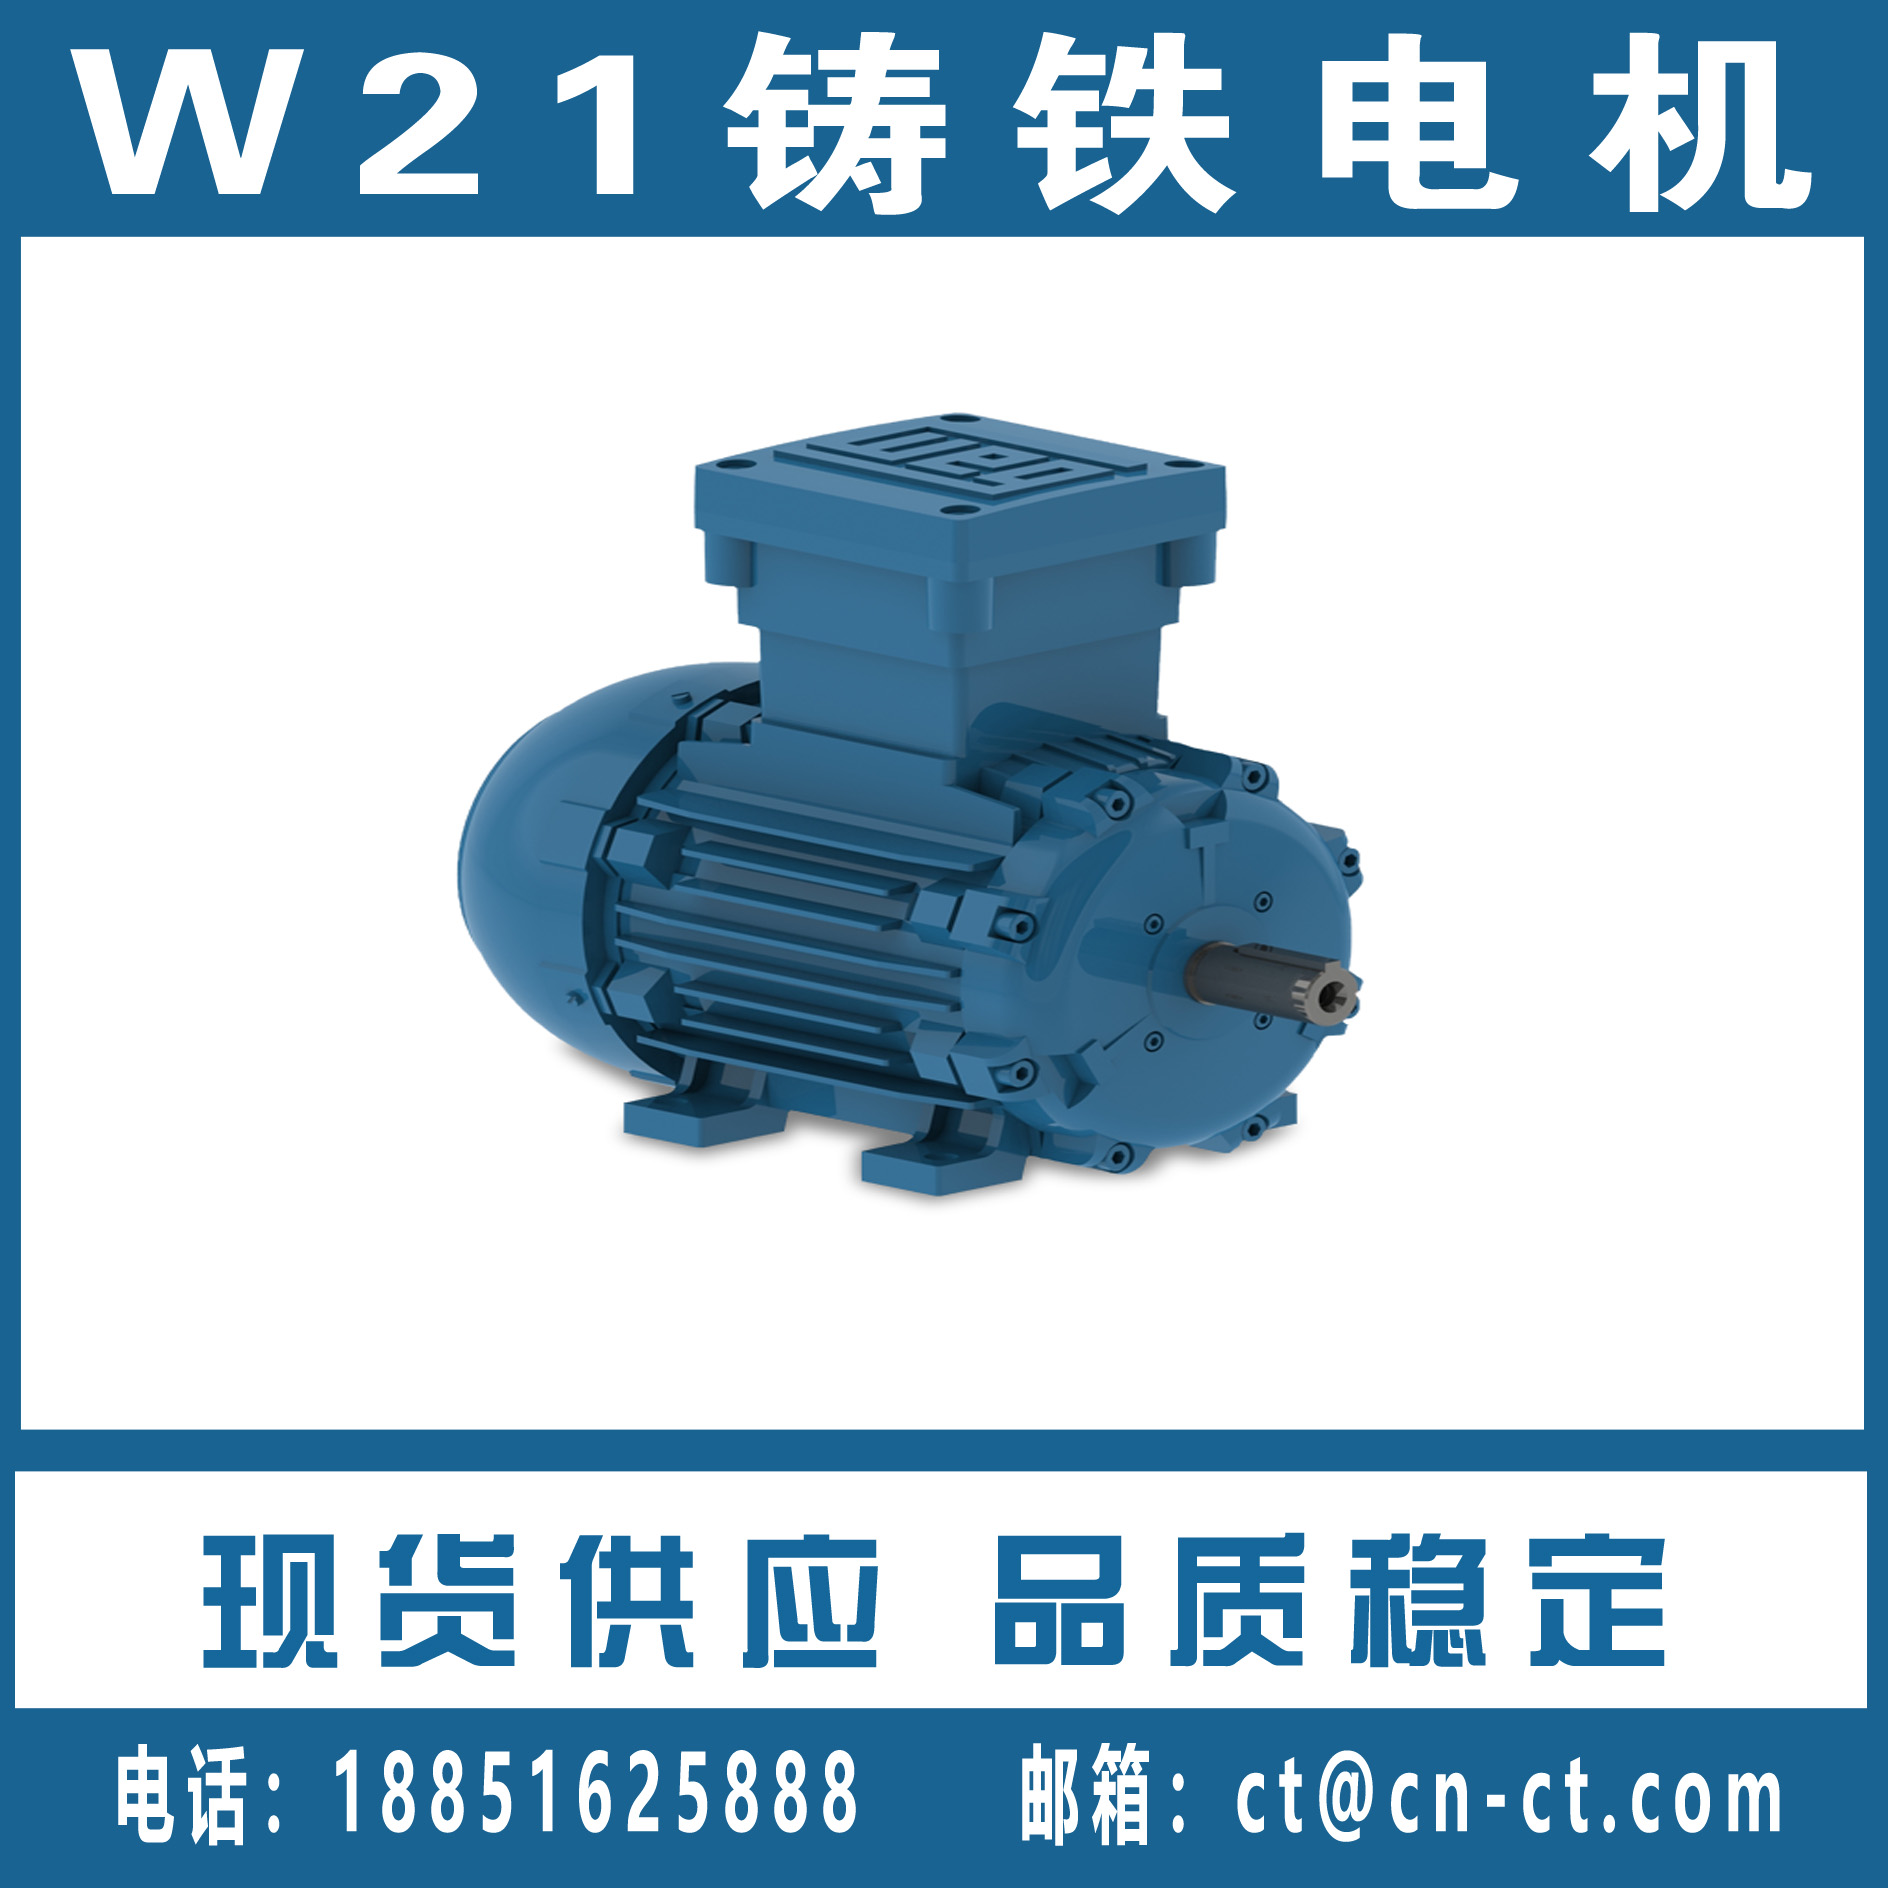 W21 铸铁电机